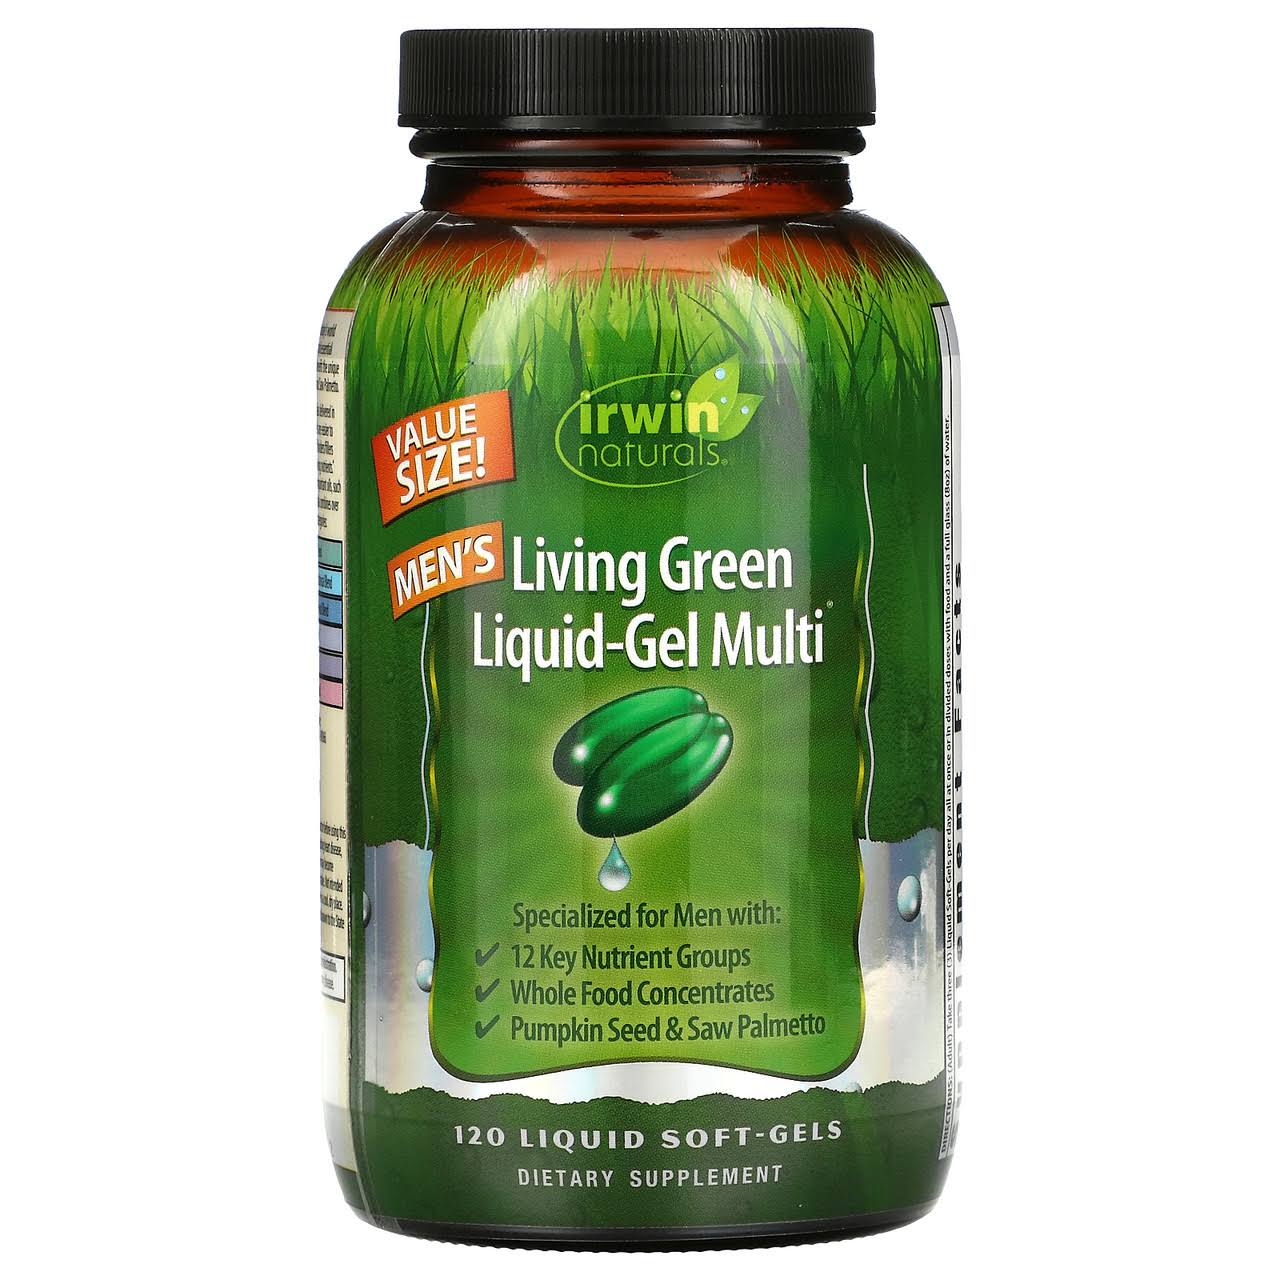 Irwin Naturals Living Green Multi Liquid Gel for Men Dietary Supplement - 120ct